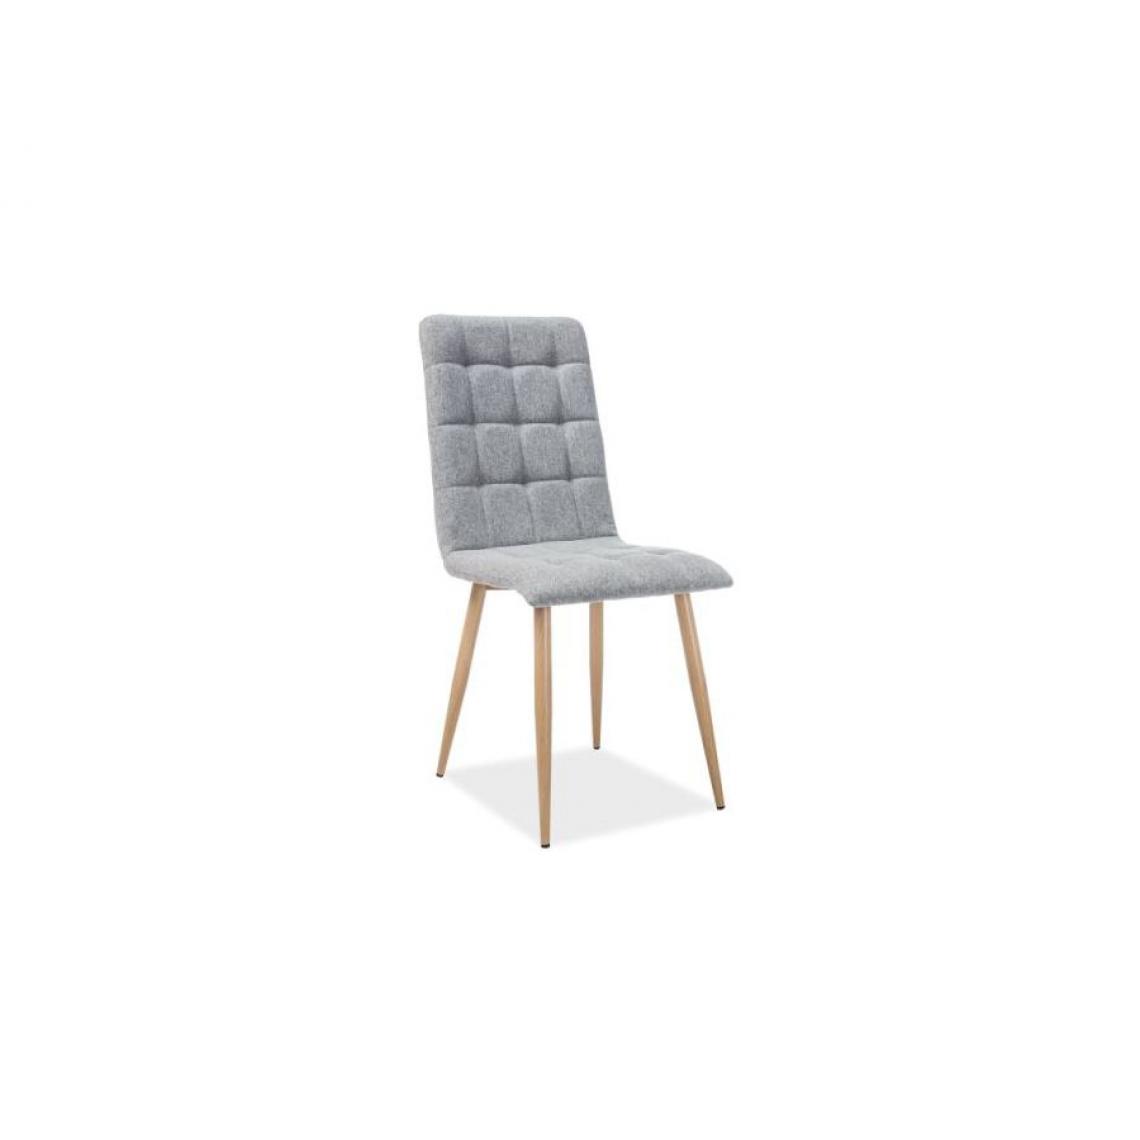 Hucoco - OTTA | Chaise moderne avec pieds en métal salon/salle à manger | Dimensions 94x44x39 cm | Rembourrée en tissu | Ergonomique - Gris - Chaises